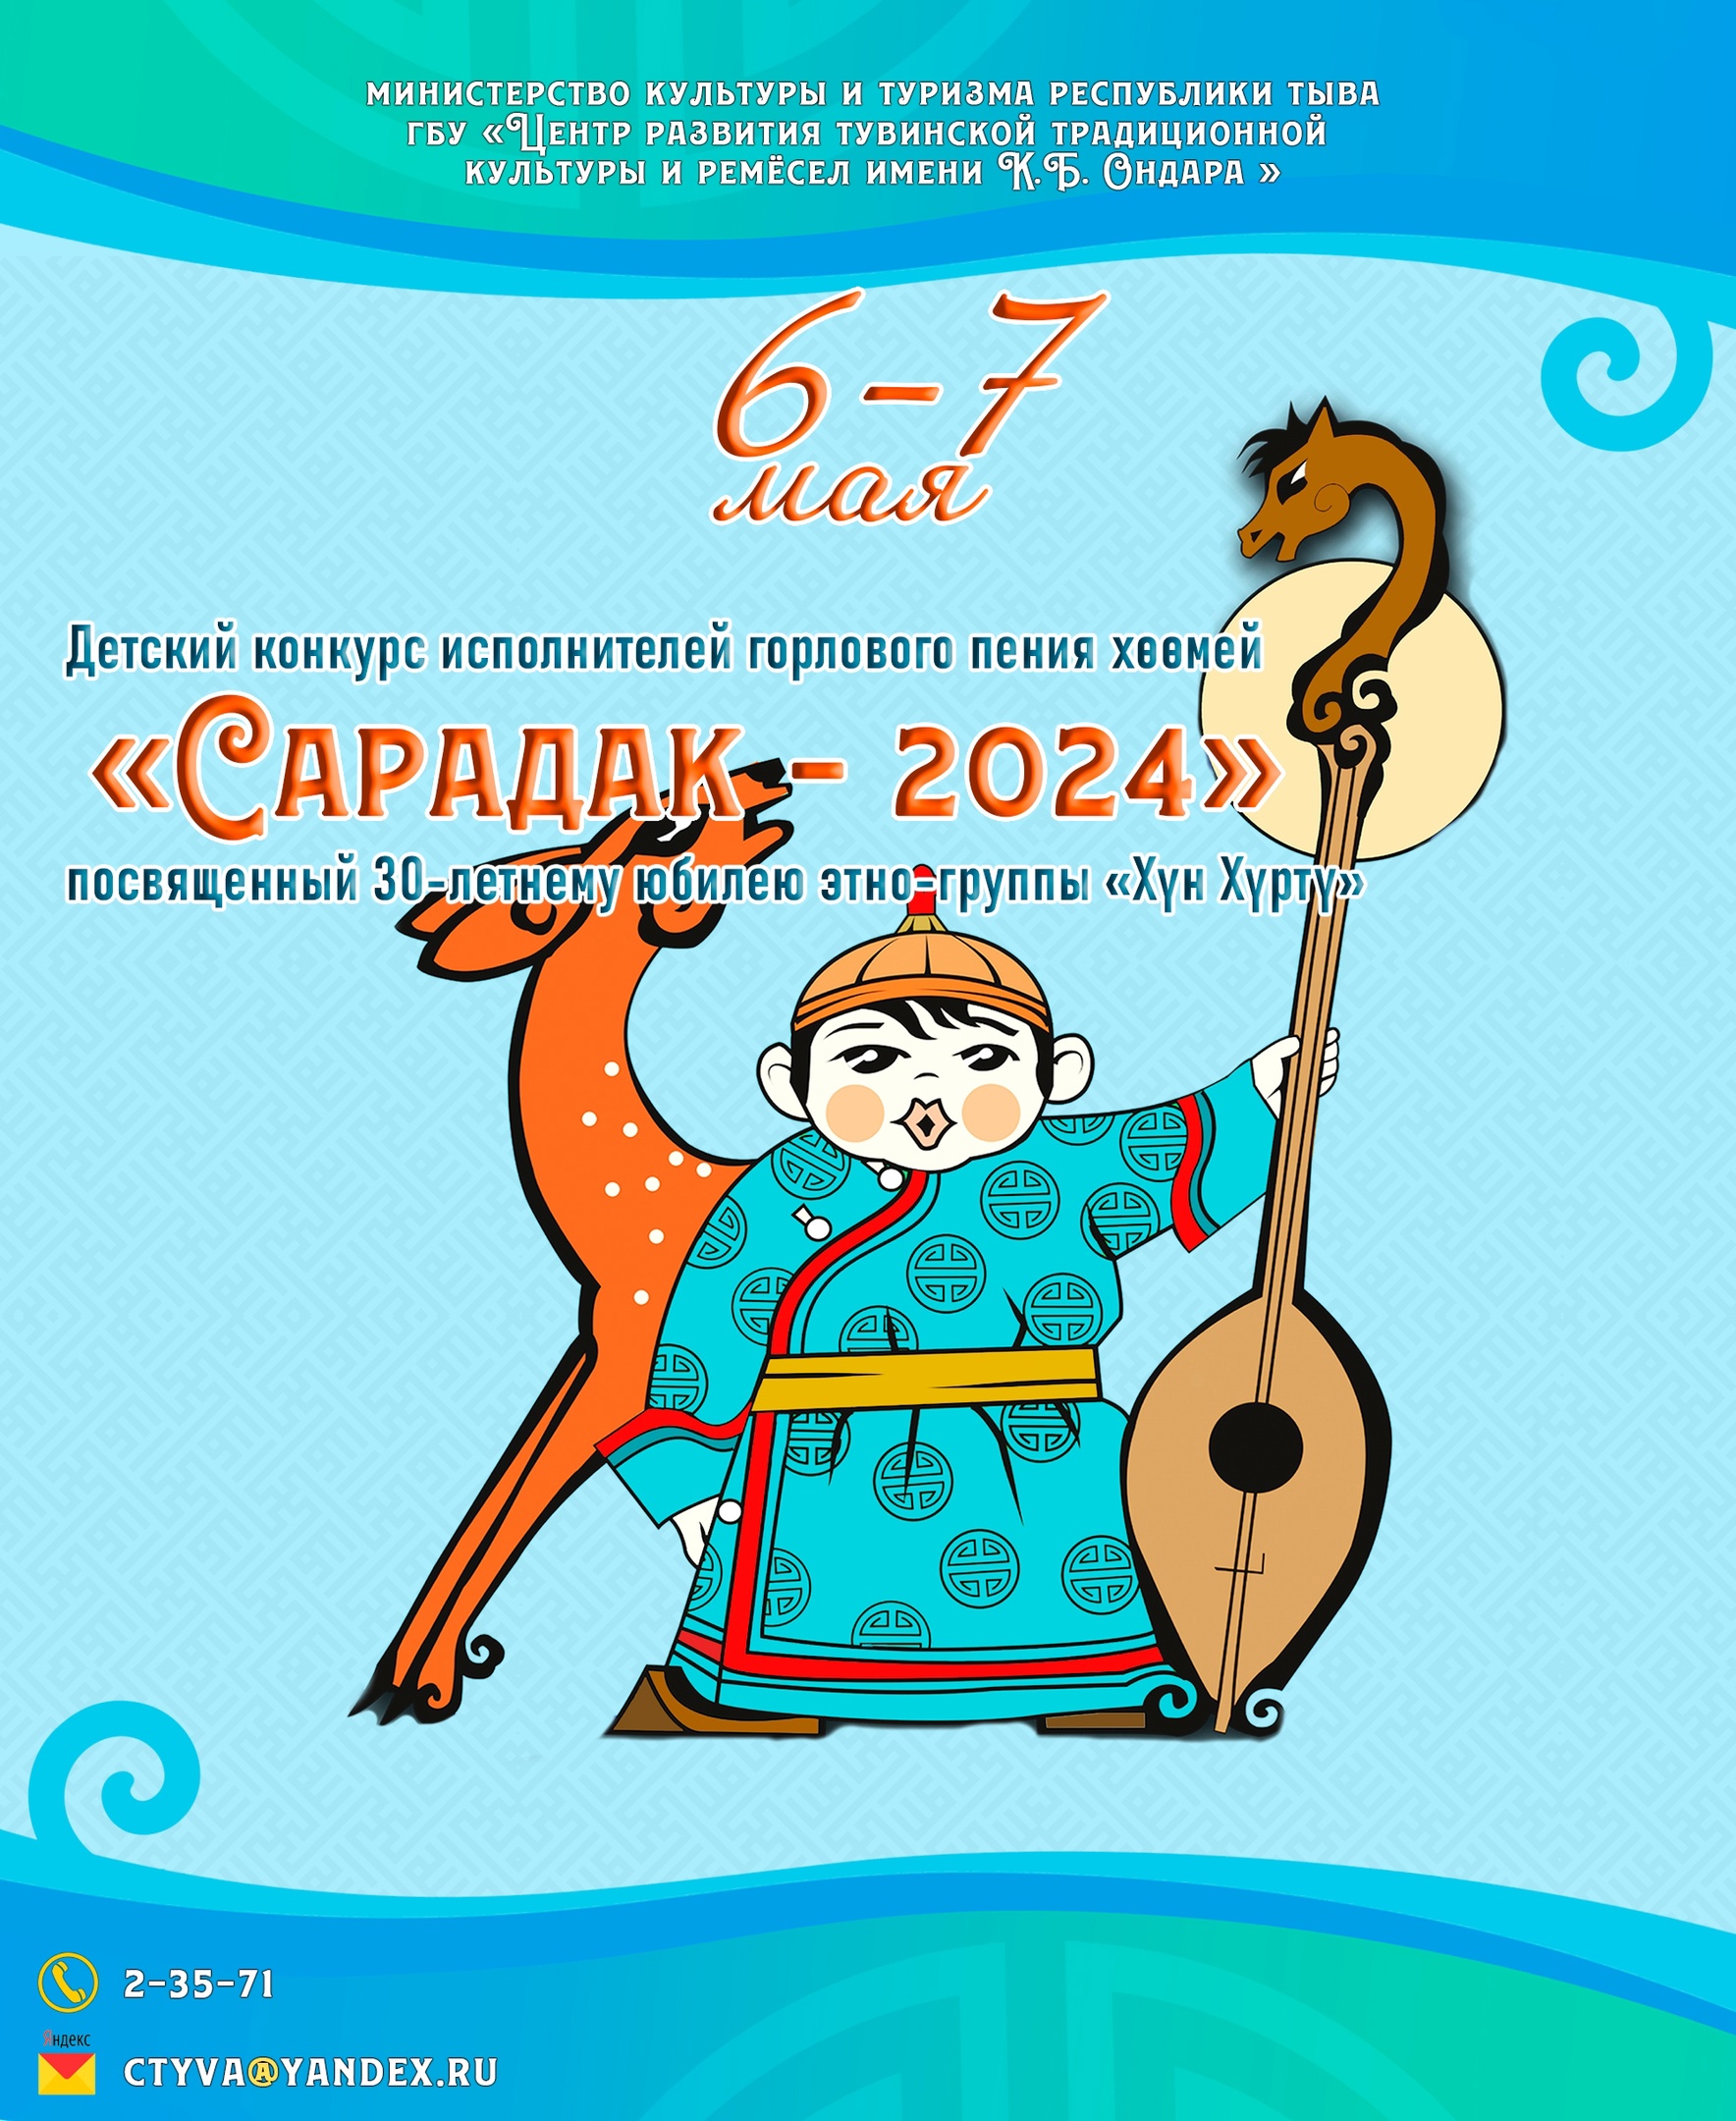 «САРАДАК - 2024», посвященный 30-летнему юбилею этногруппы "Хүн-Хүртү"